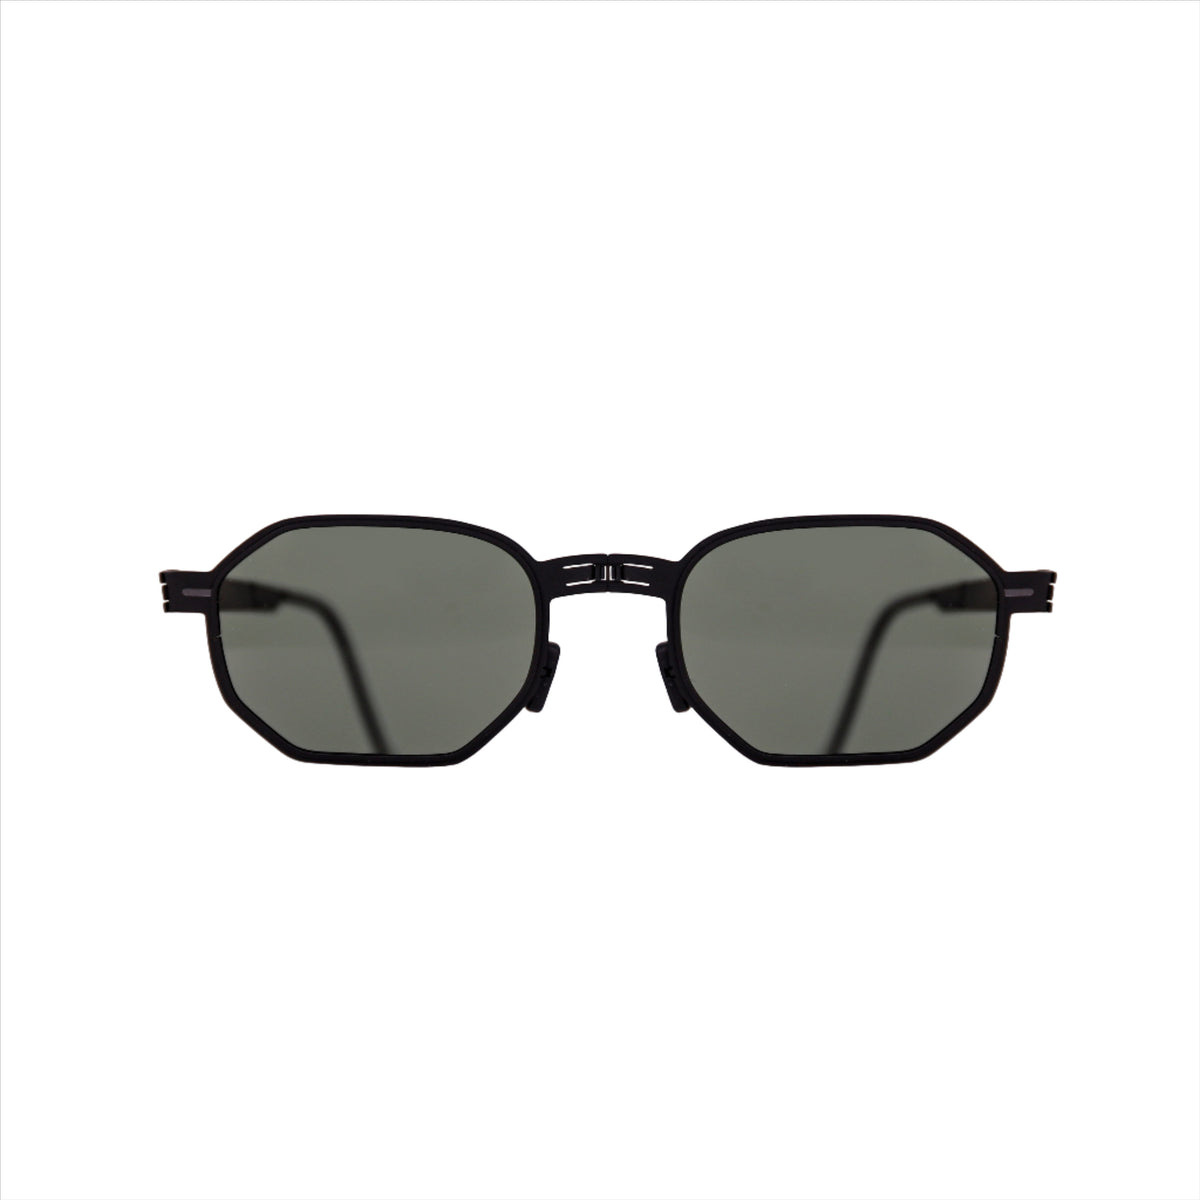 Zeus Black | G15 - ROAV Eyewear | Official Retailer